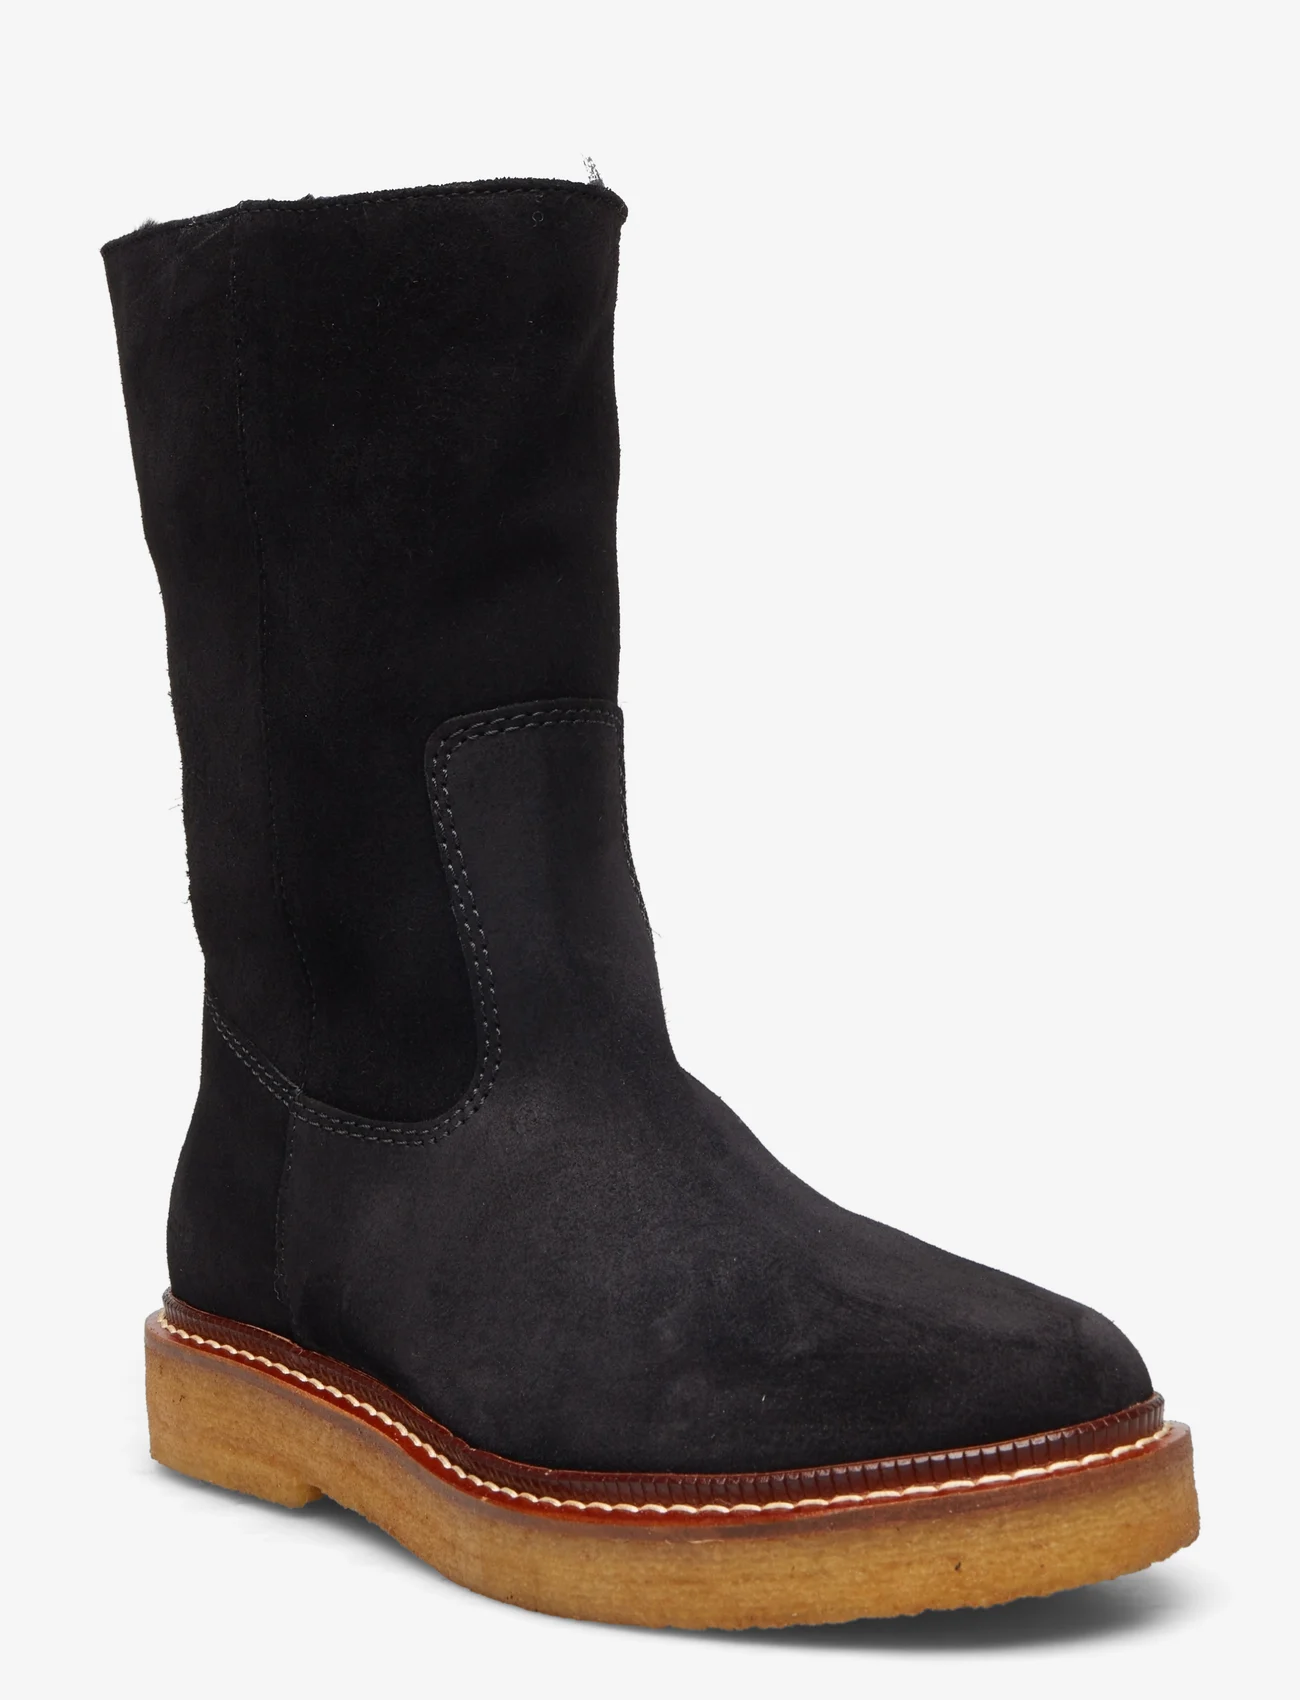 ANGULUS - Boots - flat - lygiapadžiai aulinukai iki kulkšnių - 1163/2014 black/black lamb woo - 0